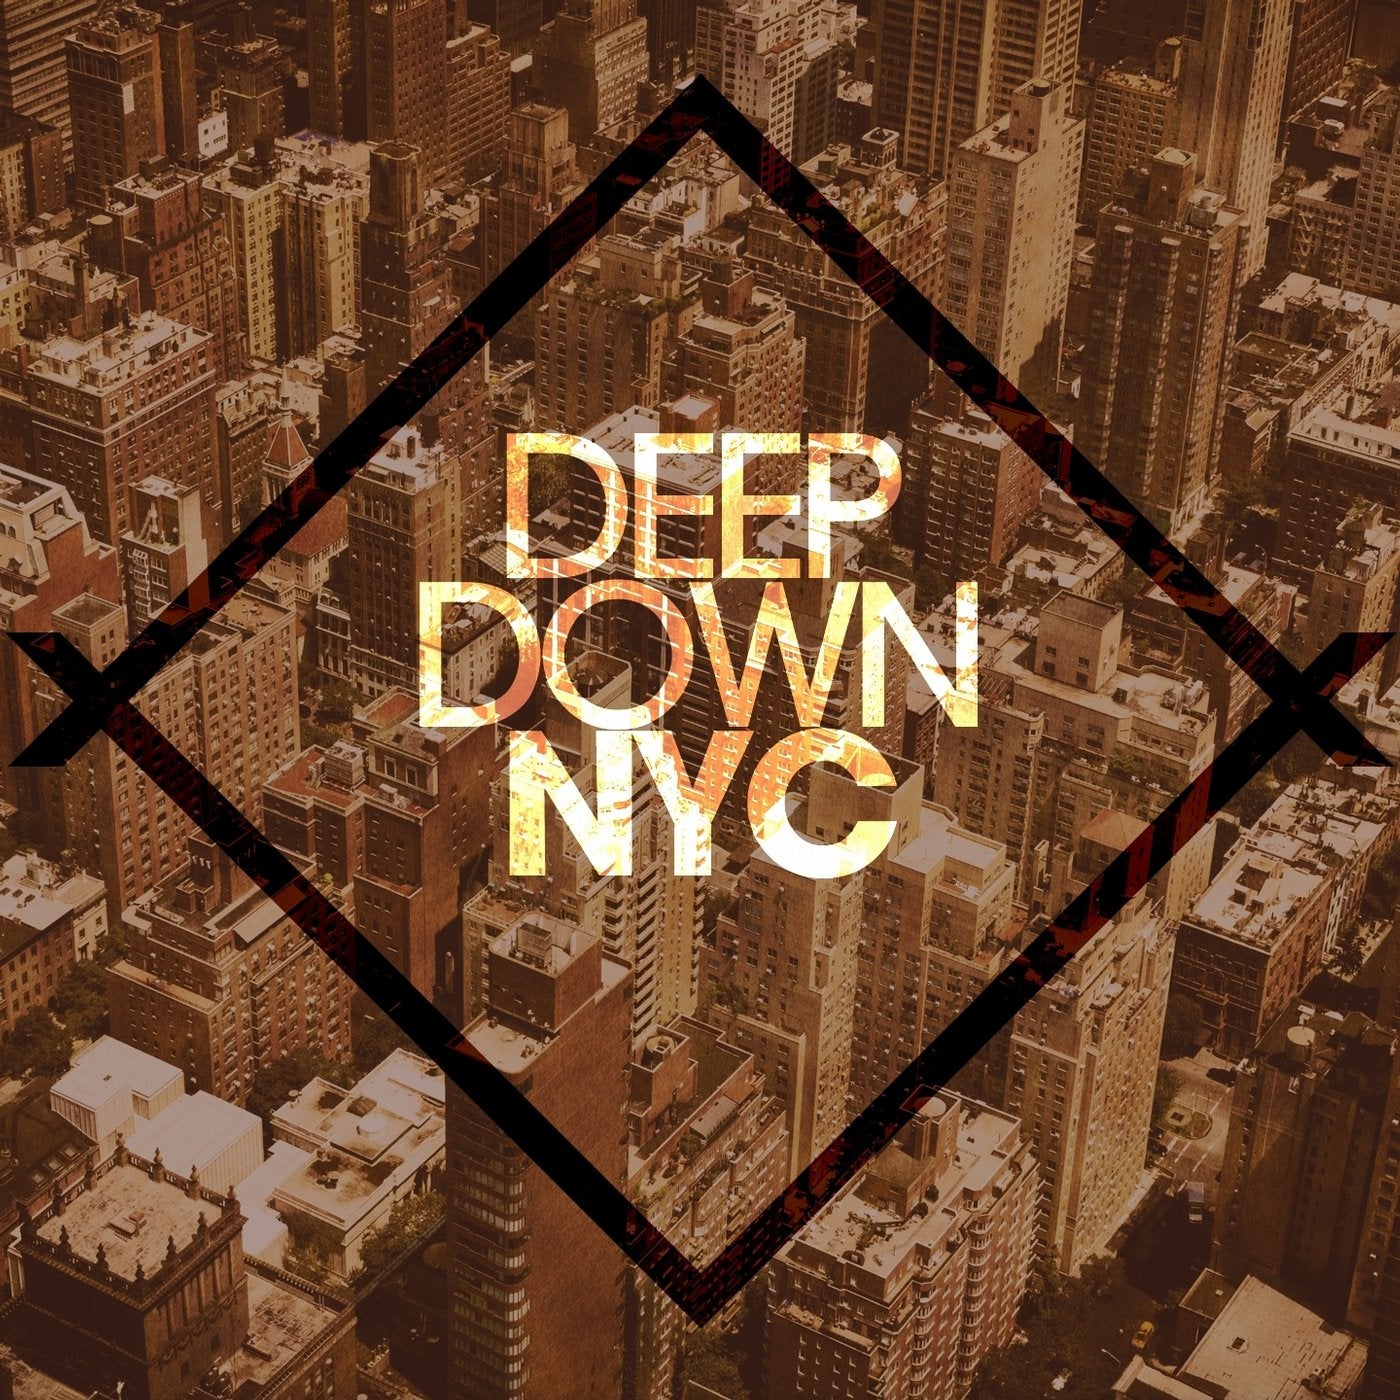 Deep Down NYC